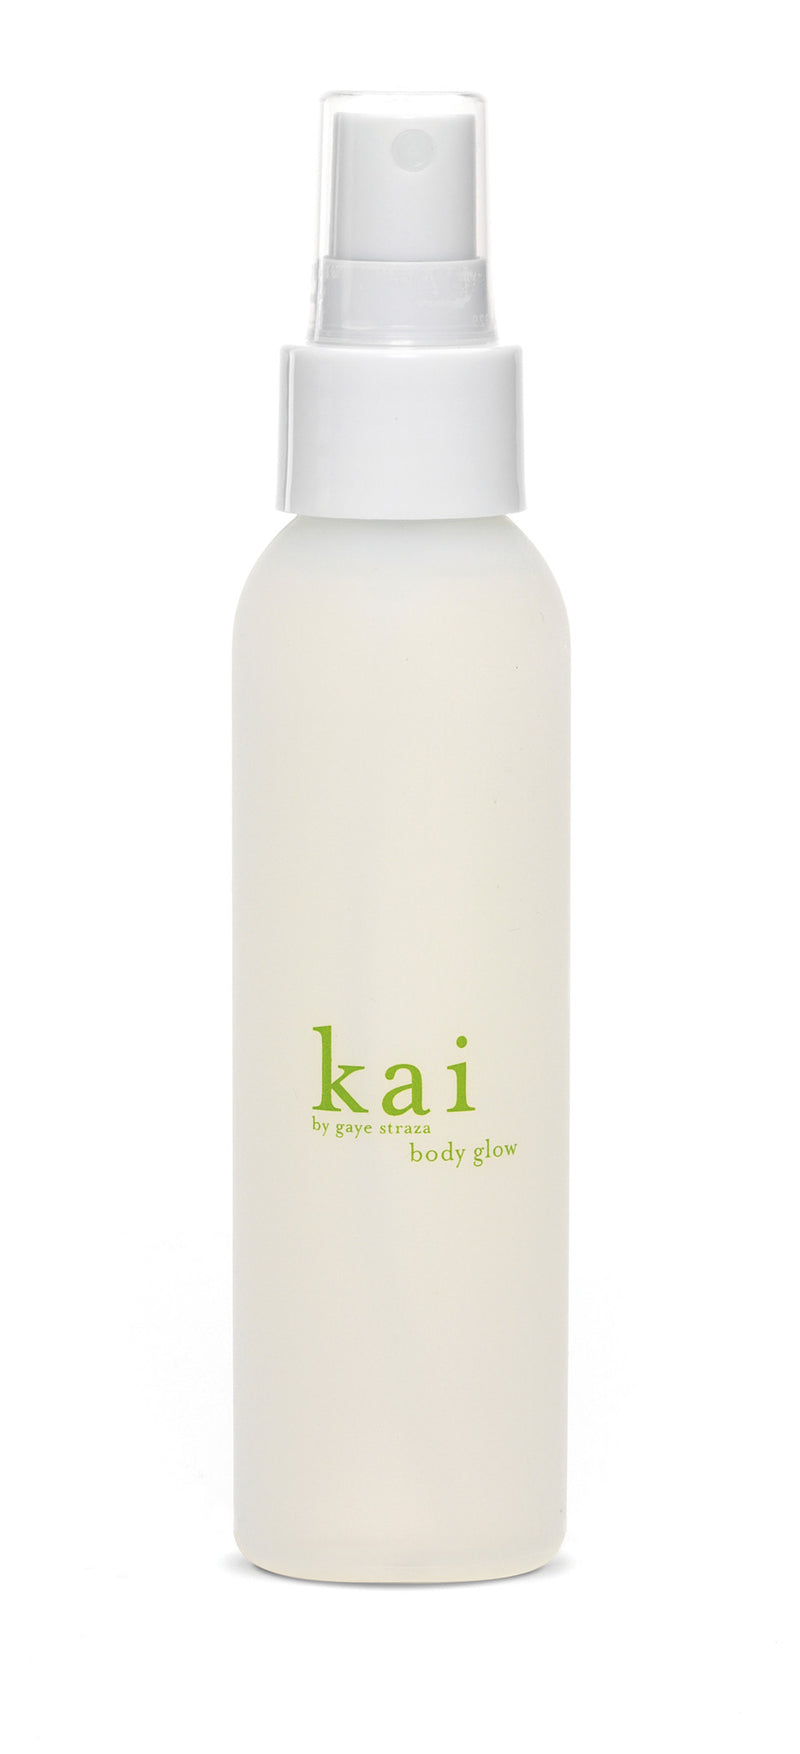 media image for kai body glow design by kai fragrance 1 280